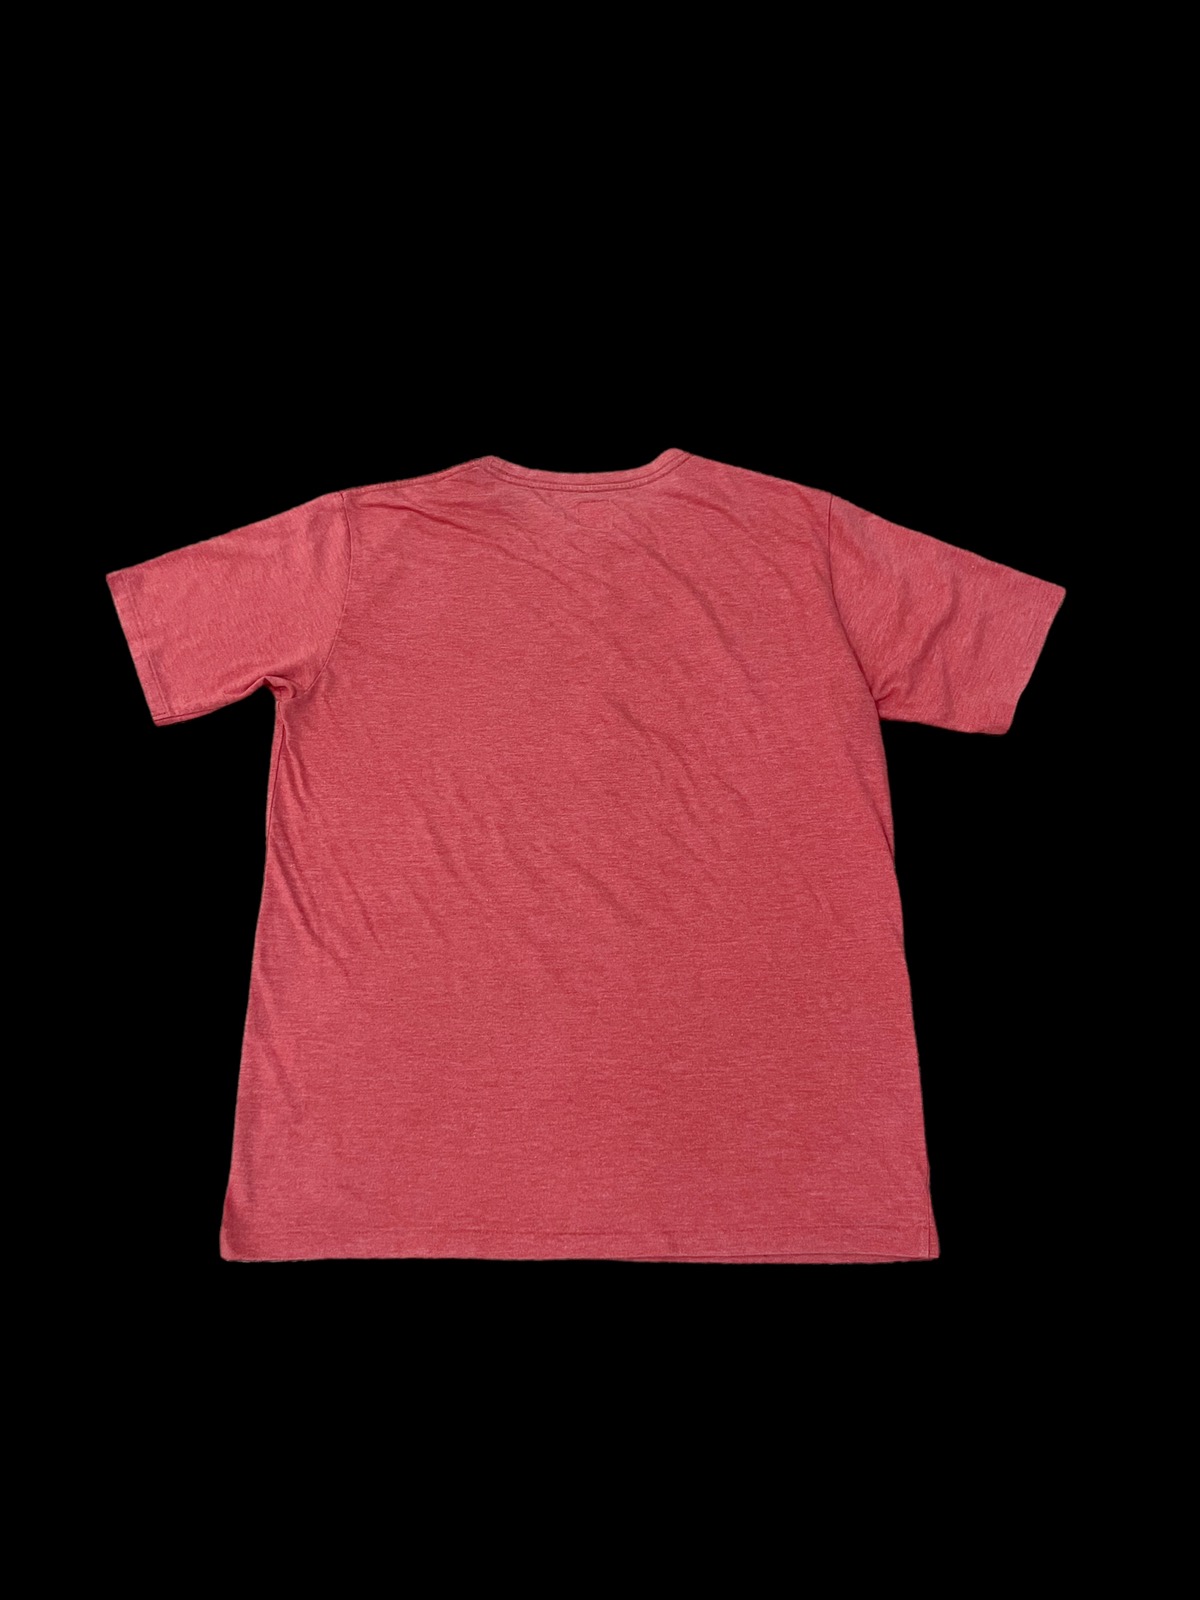 Jambo Print T-Shirt - 2